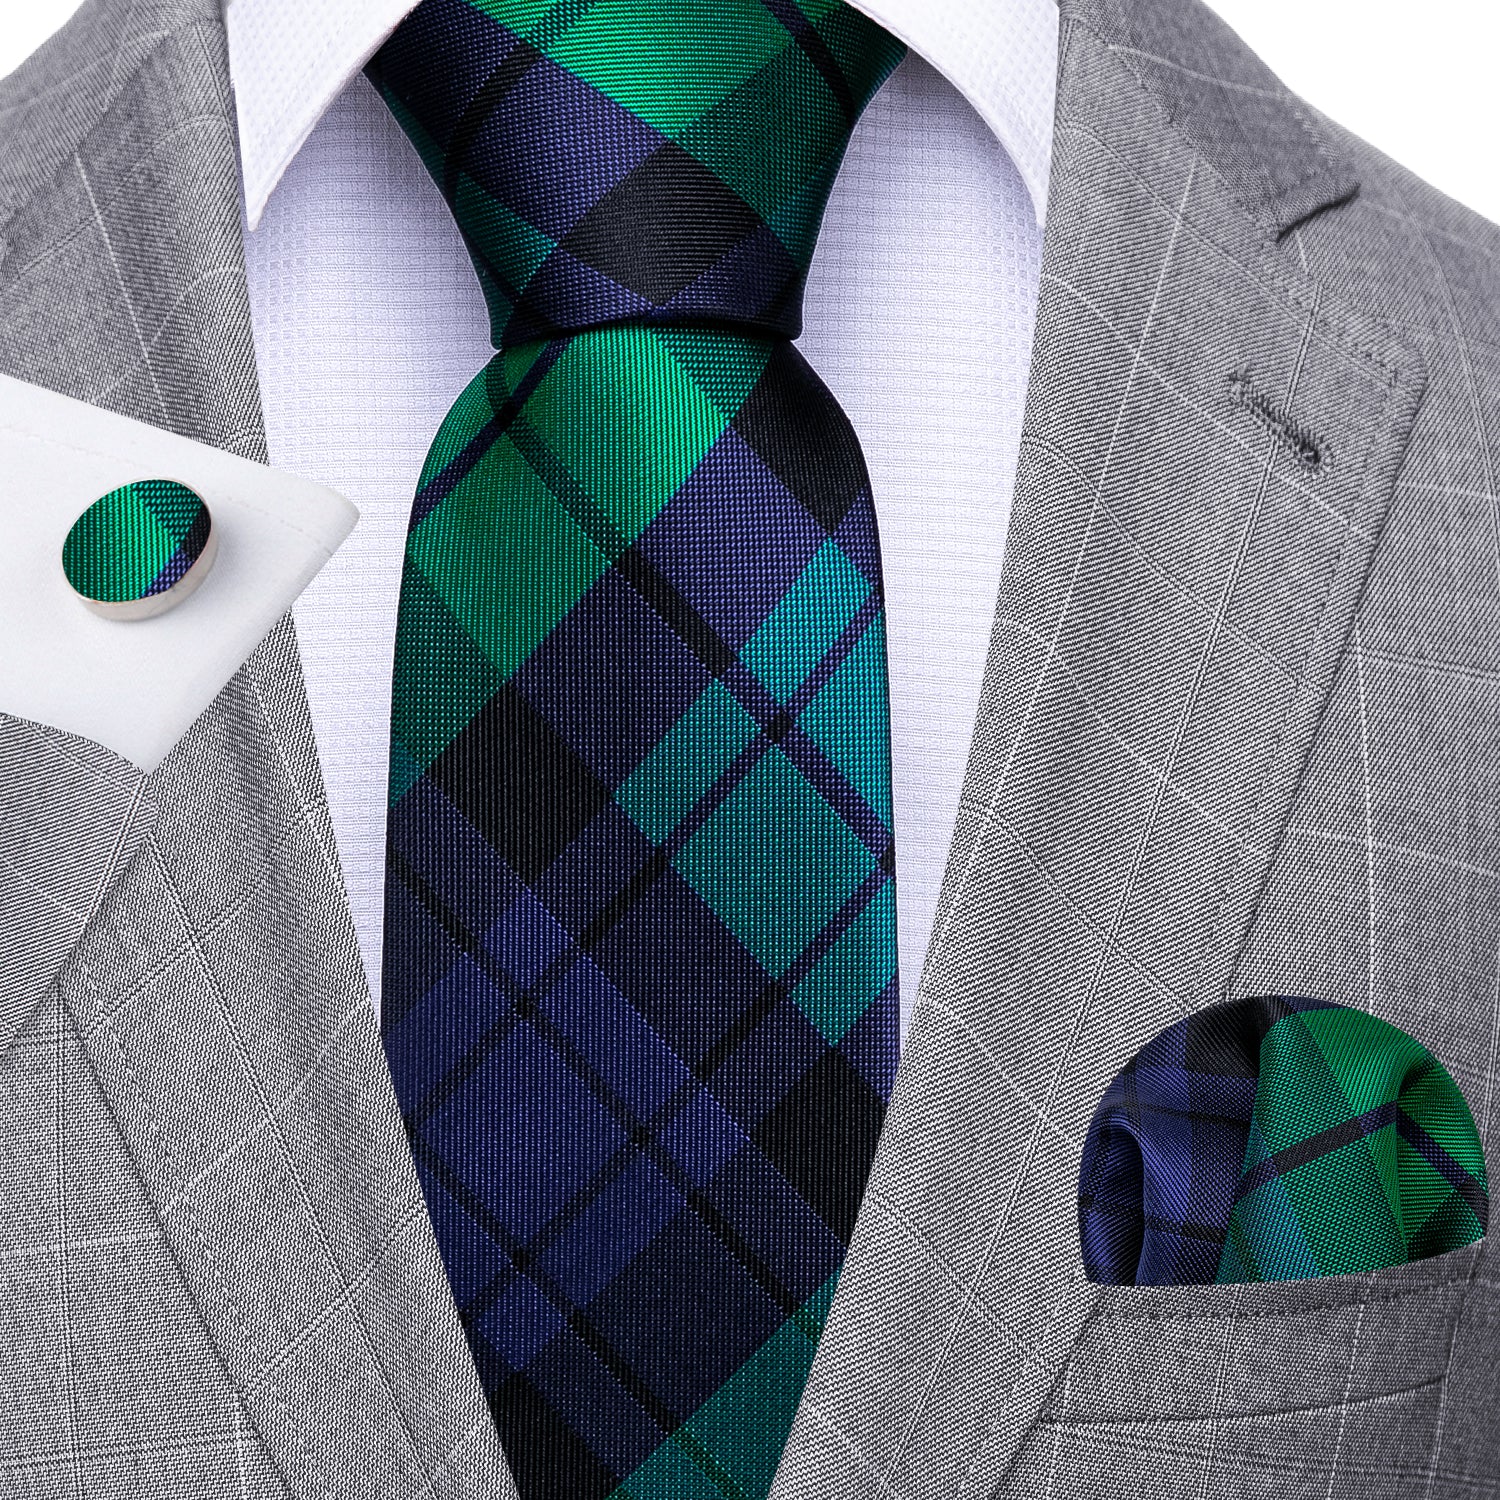 Barry.wang Men's Tie Blue Green Plaid Striped Silk Tie Hanky Cufflinks Set New  Arrival